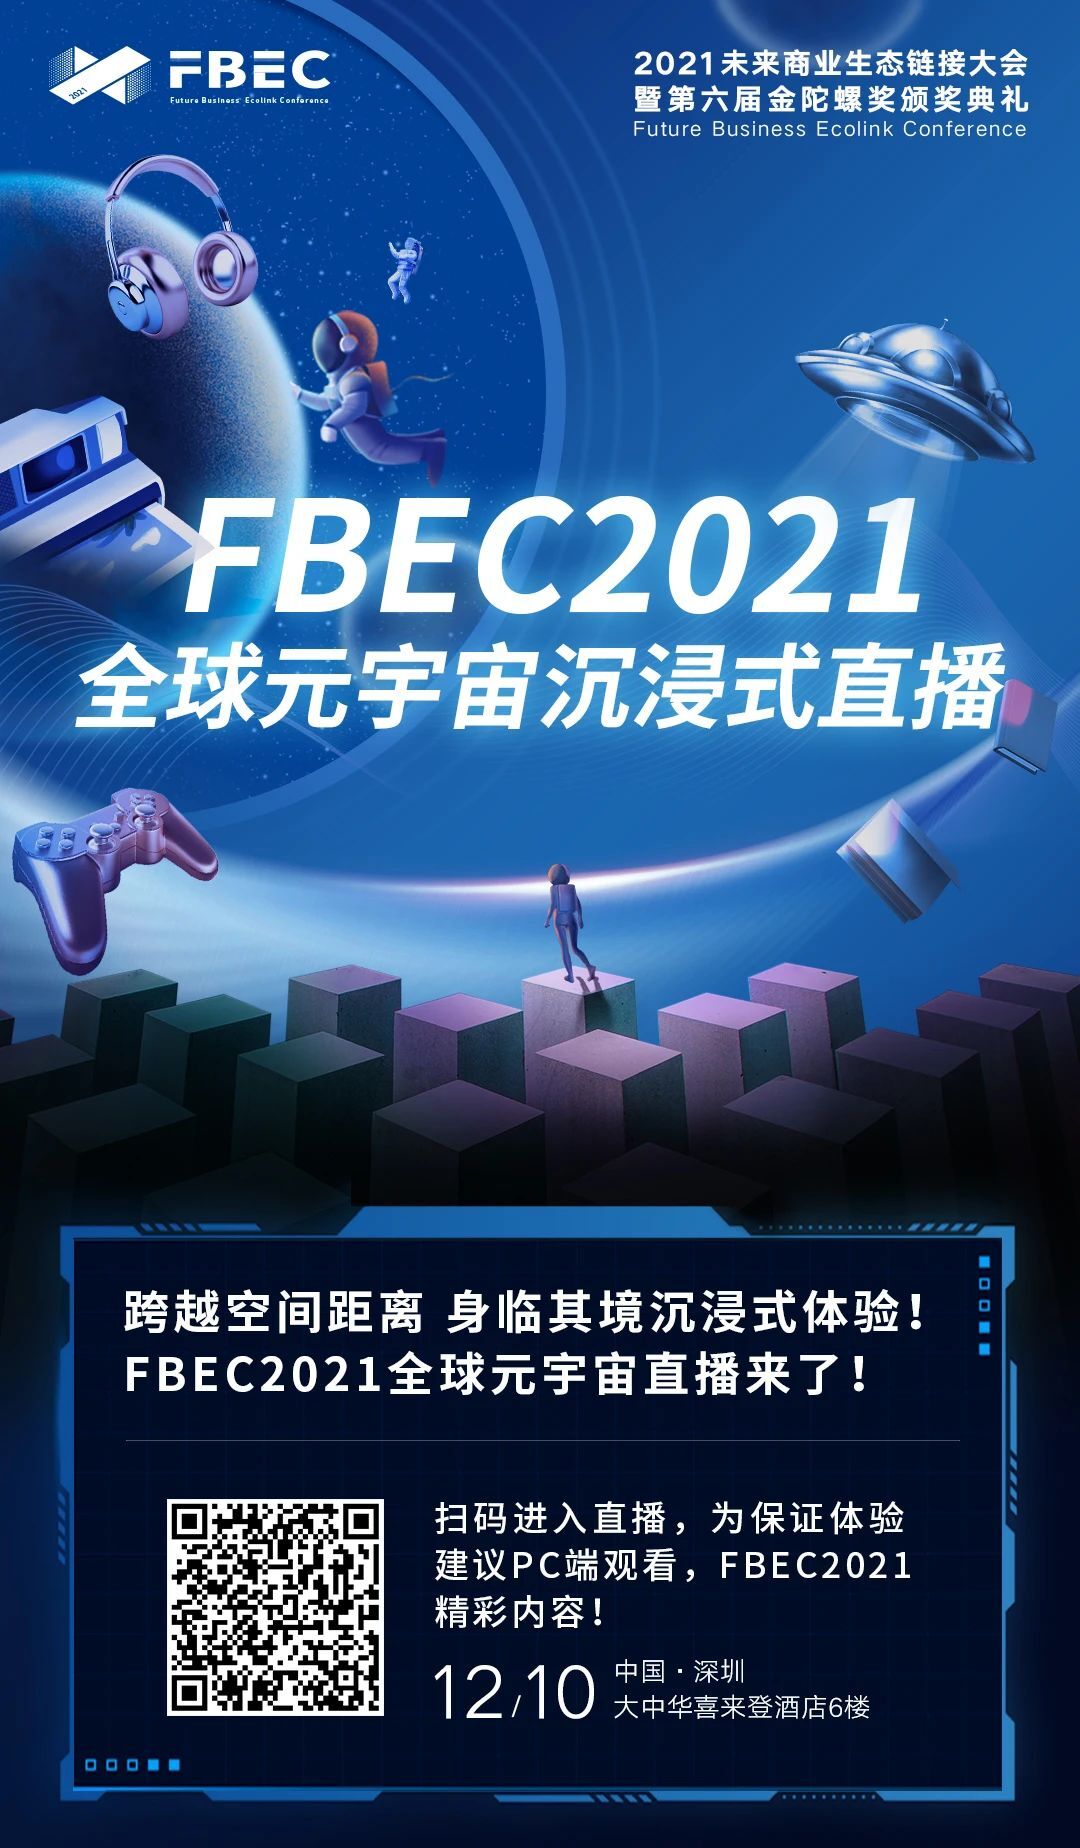 全程VR直播！XR产业年度盛会FBEC 2021将于明日开幕